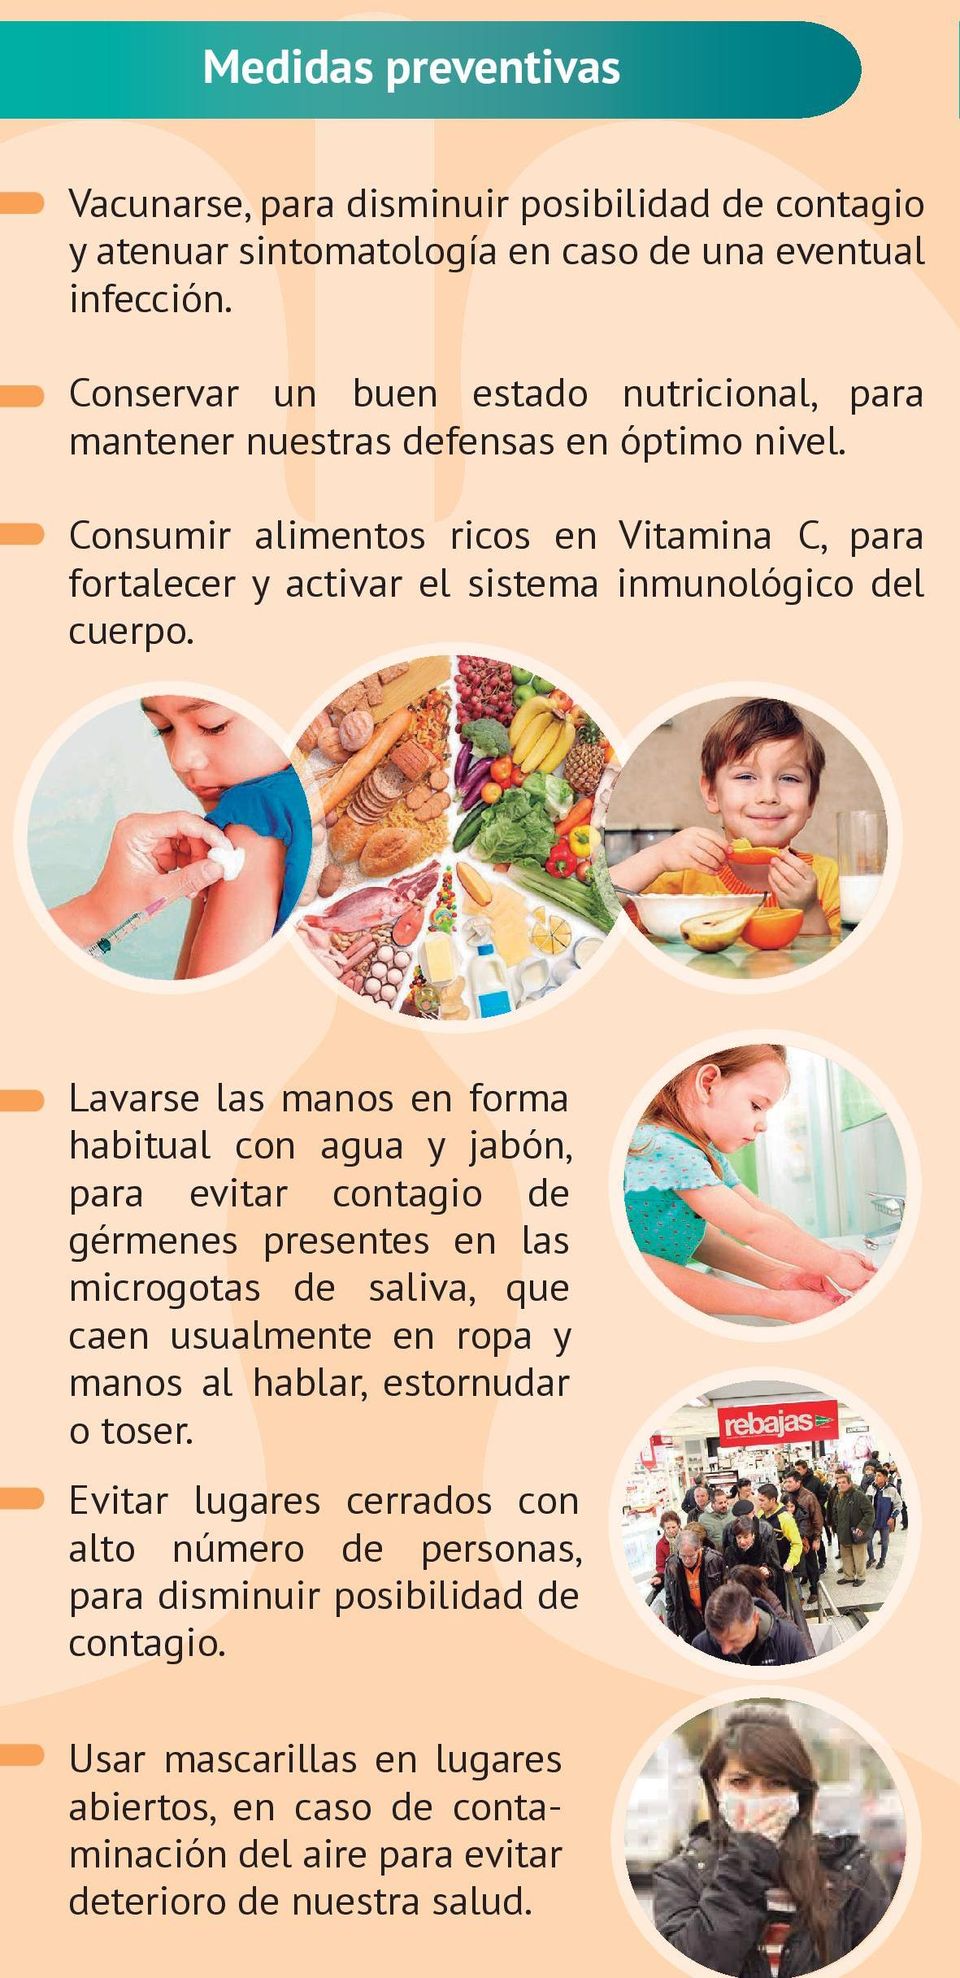 Consumir alimentos ricos en Vitamina C, para fortalecer y activar el sistema inmunológico del cuerpo.